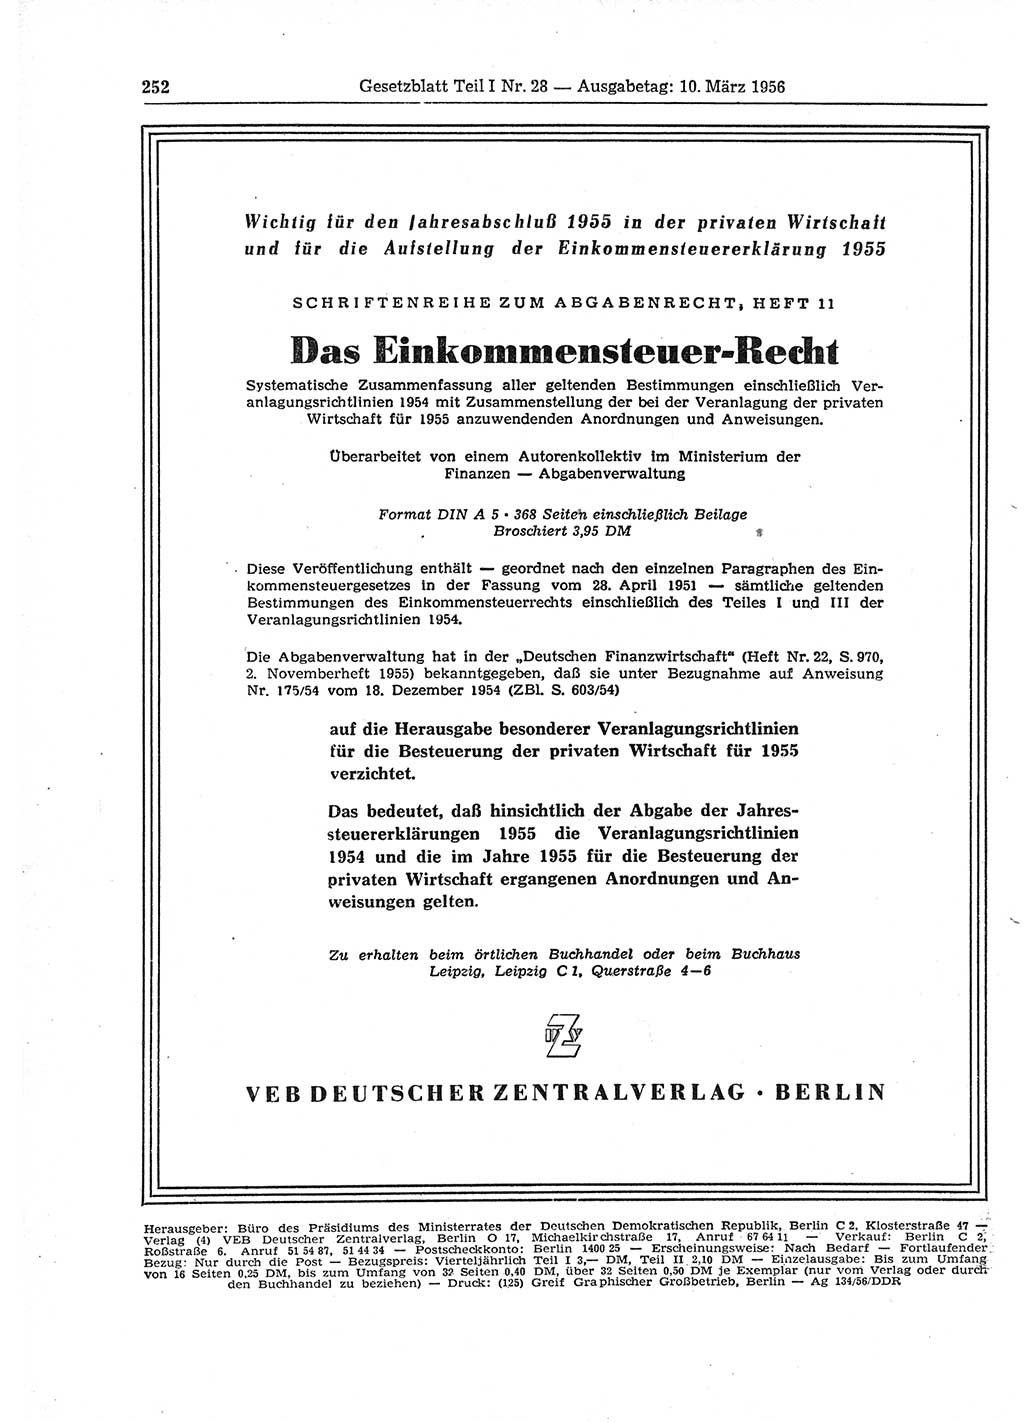 Gesetzblatt (GBl.) der Deutschen Demokratischen Republik (DDR) Teil Ⅰ 1956, Seite 252 (GBl. DDR Ⅰ 1956, S. 252)